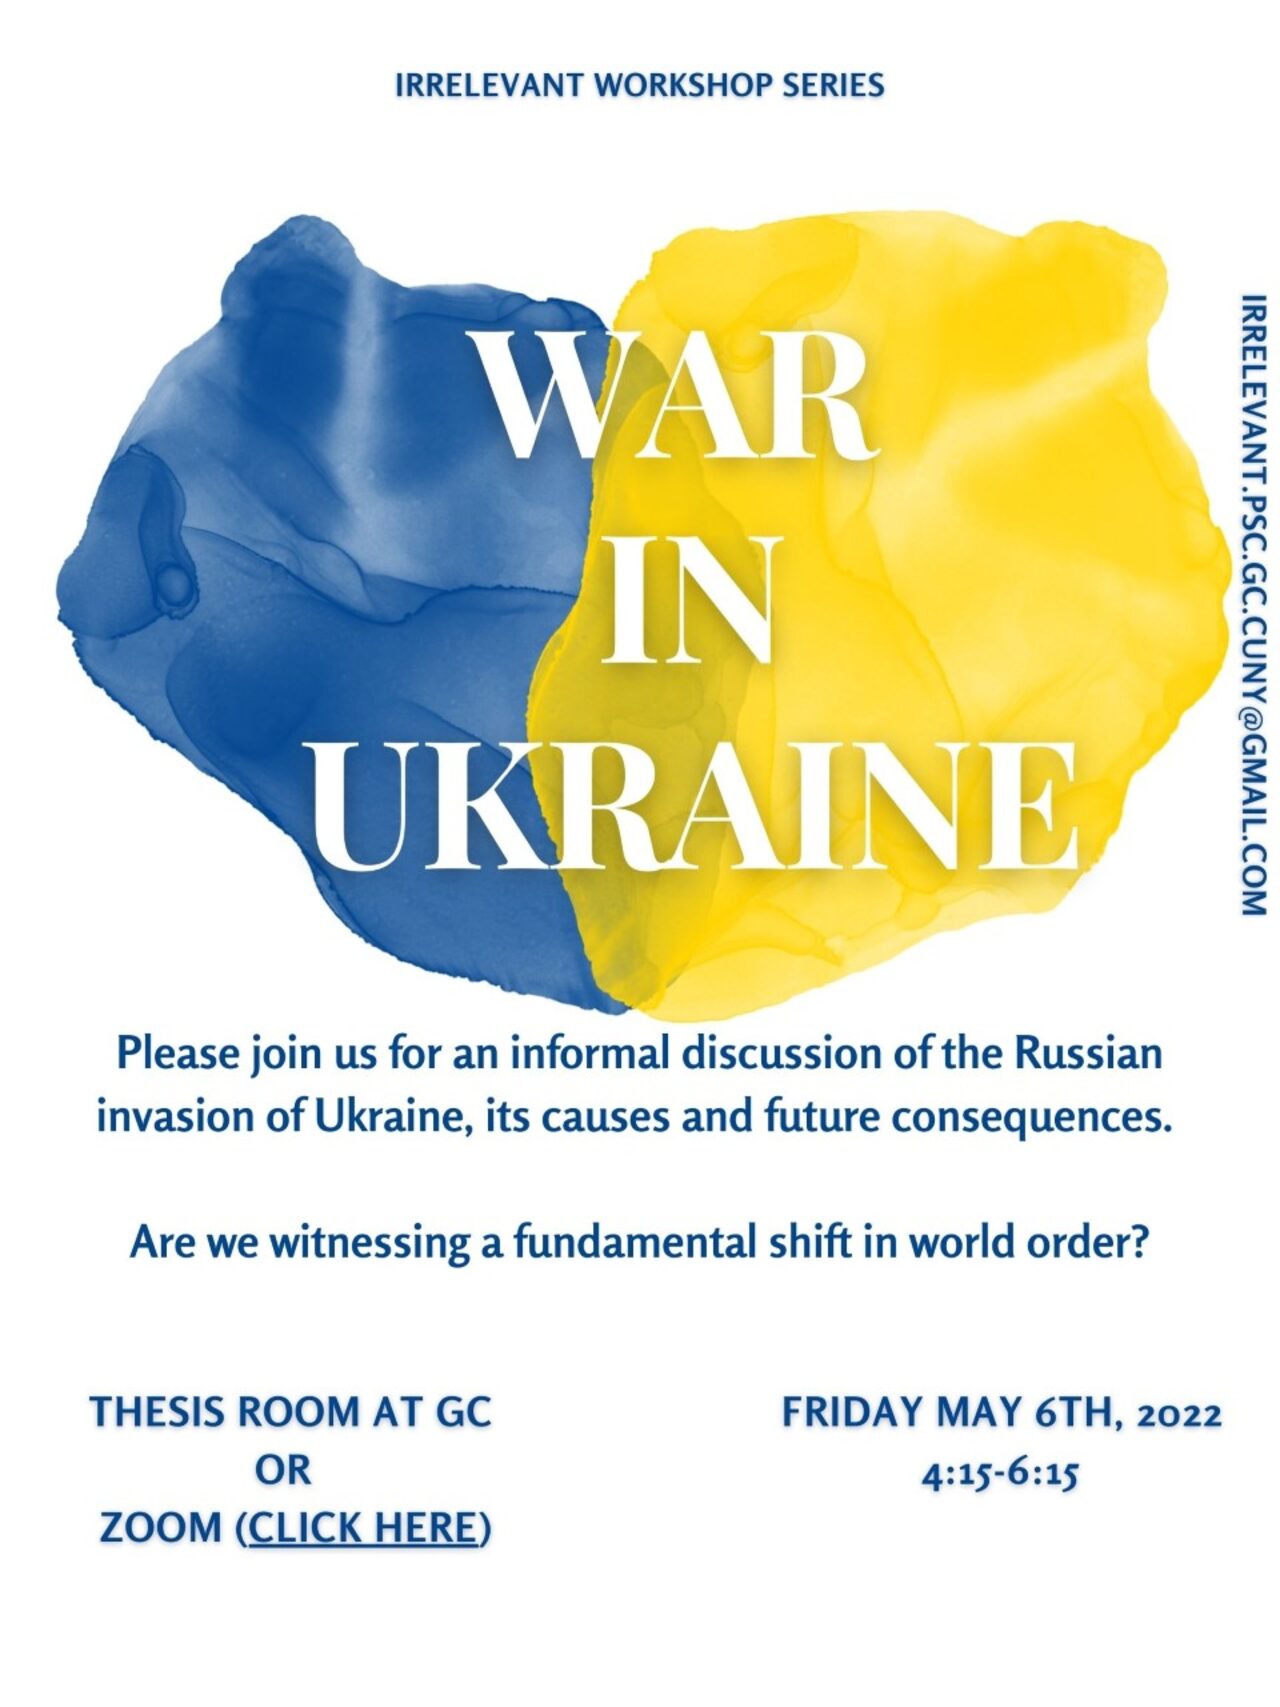 IRrelevant Workshop Series: "War in Ukraine," Friday, May 6, 4:15-6:15pm